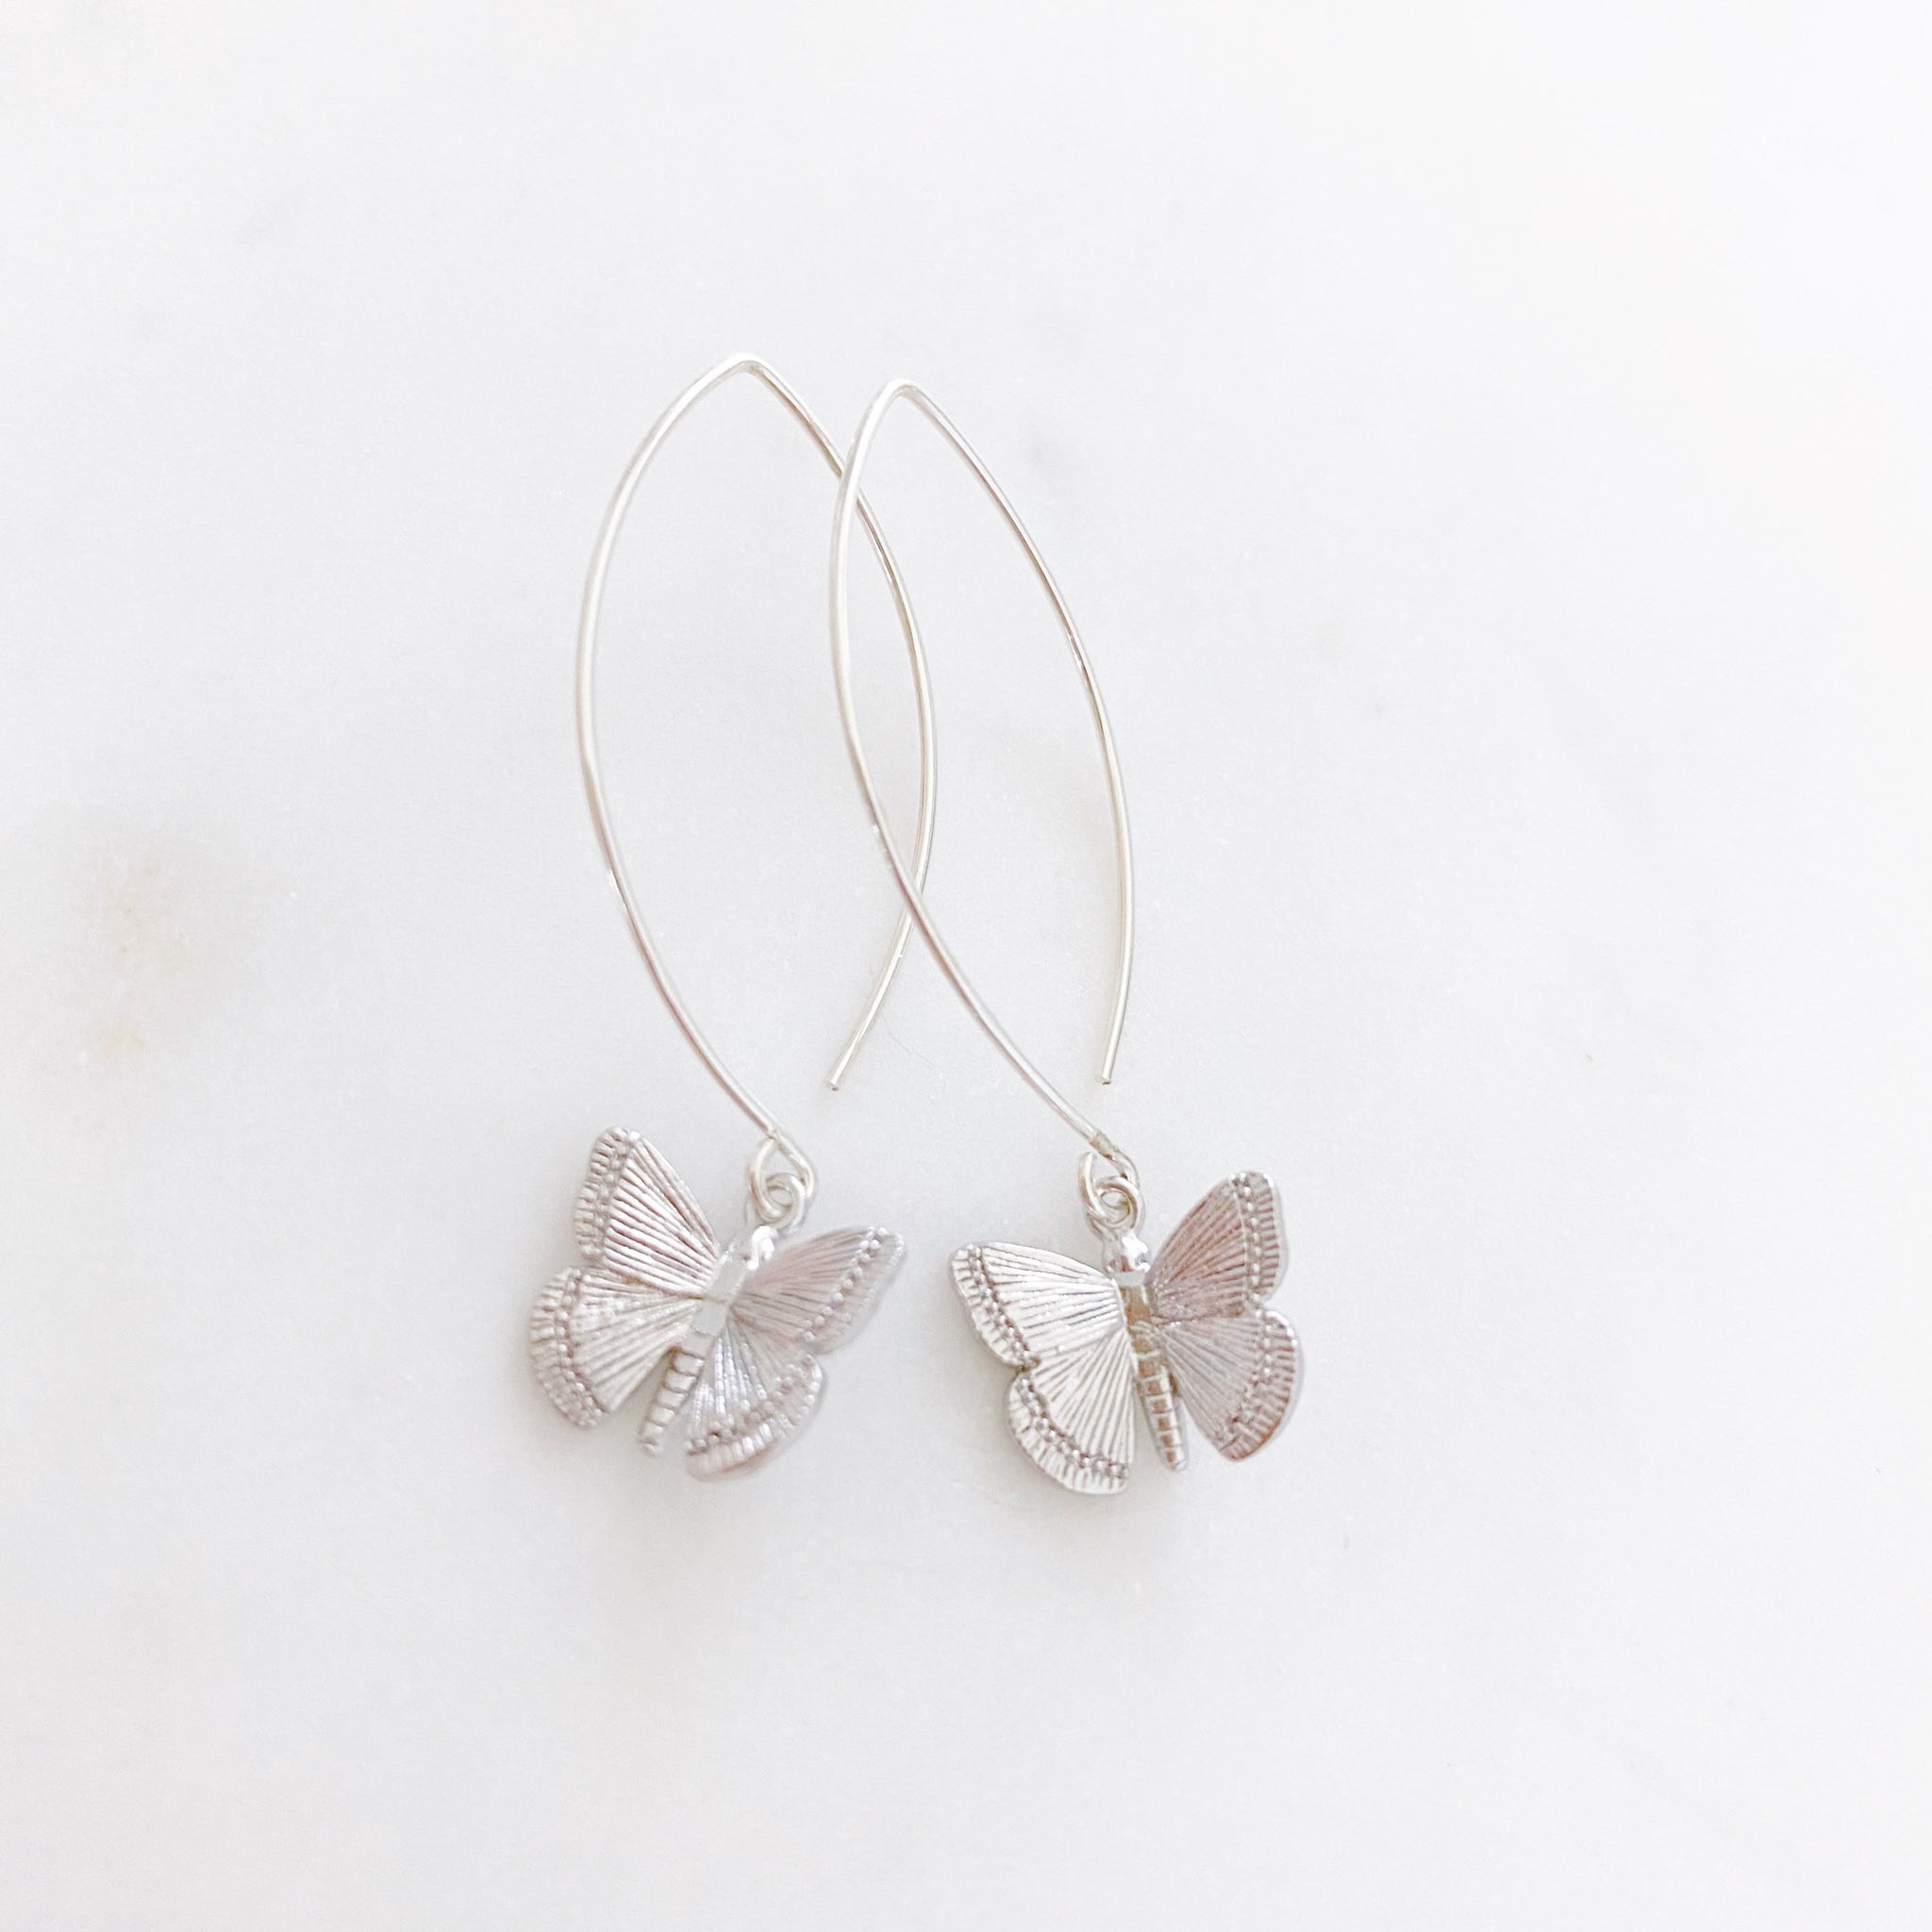 Butterfly Earrings, Silver Drop Earrings, Butterfly Gift, Best Friend Birthday Gifts